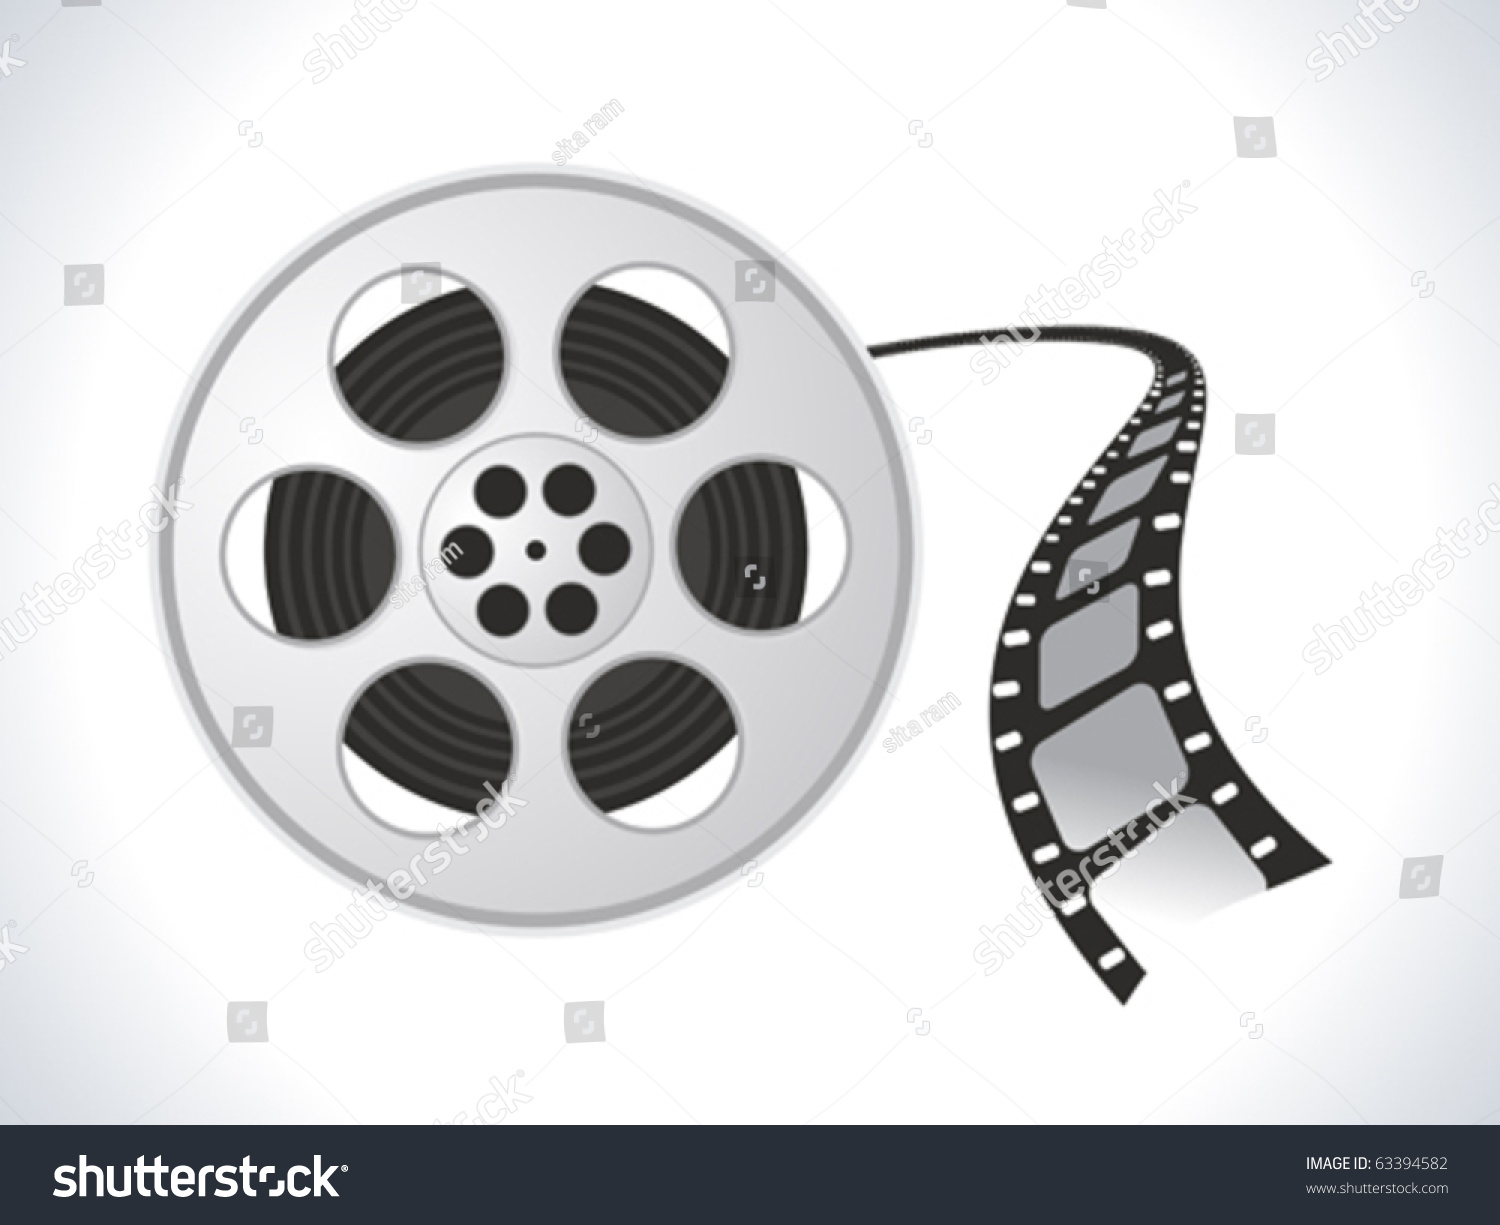 Film Roll Icon Vector Illustration - 63394582 : Shutterstock